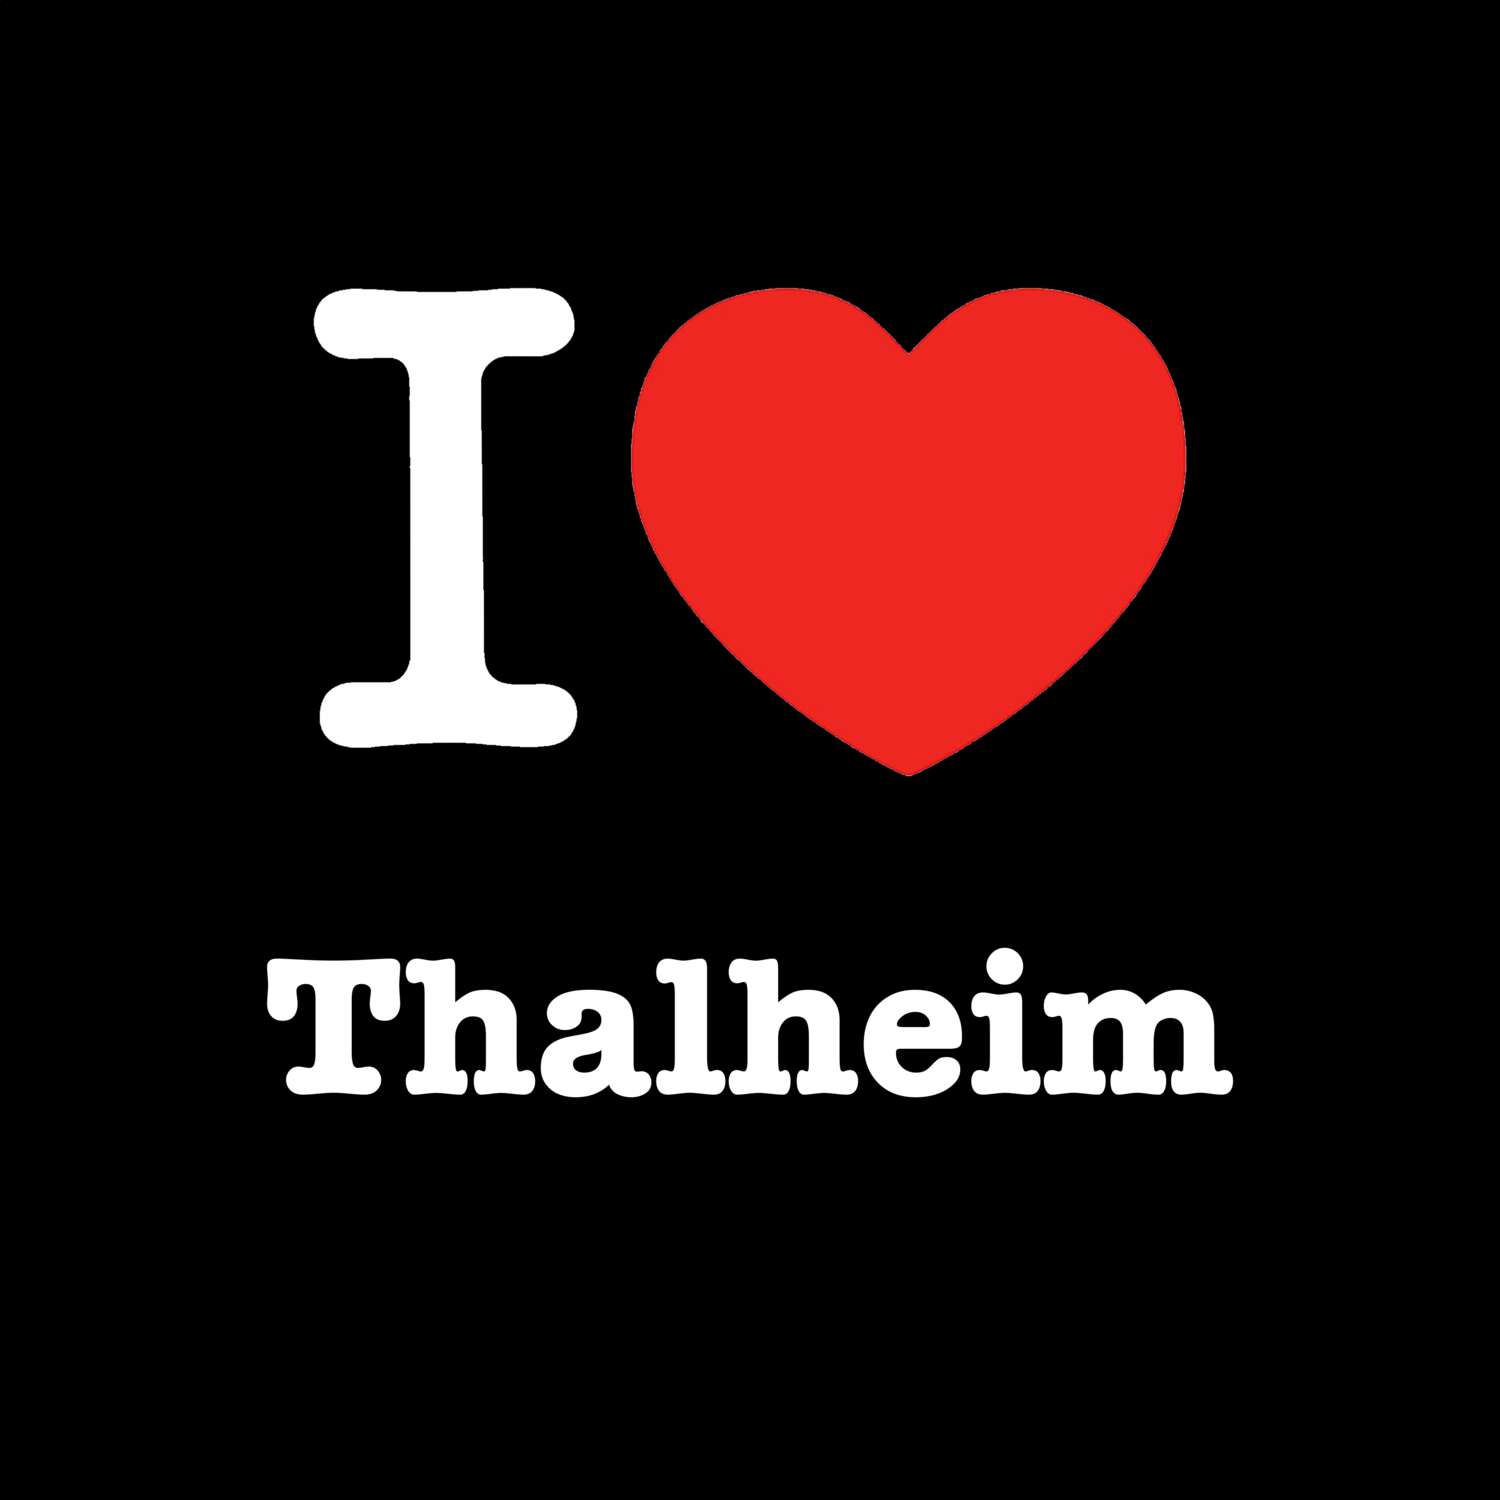 Thalheim T-Shirt »I love«